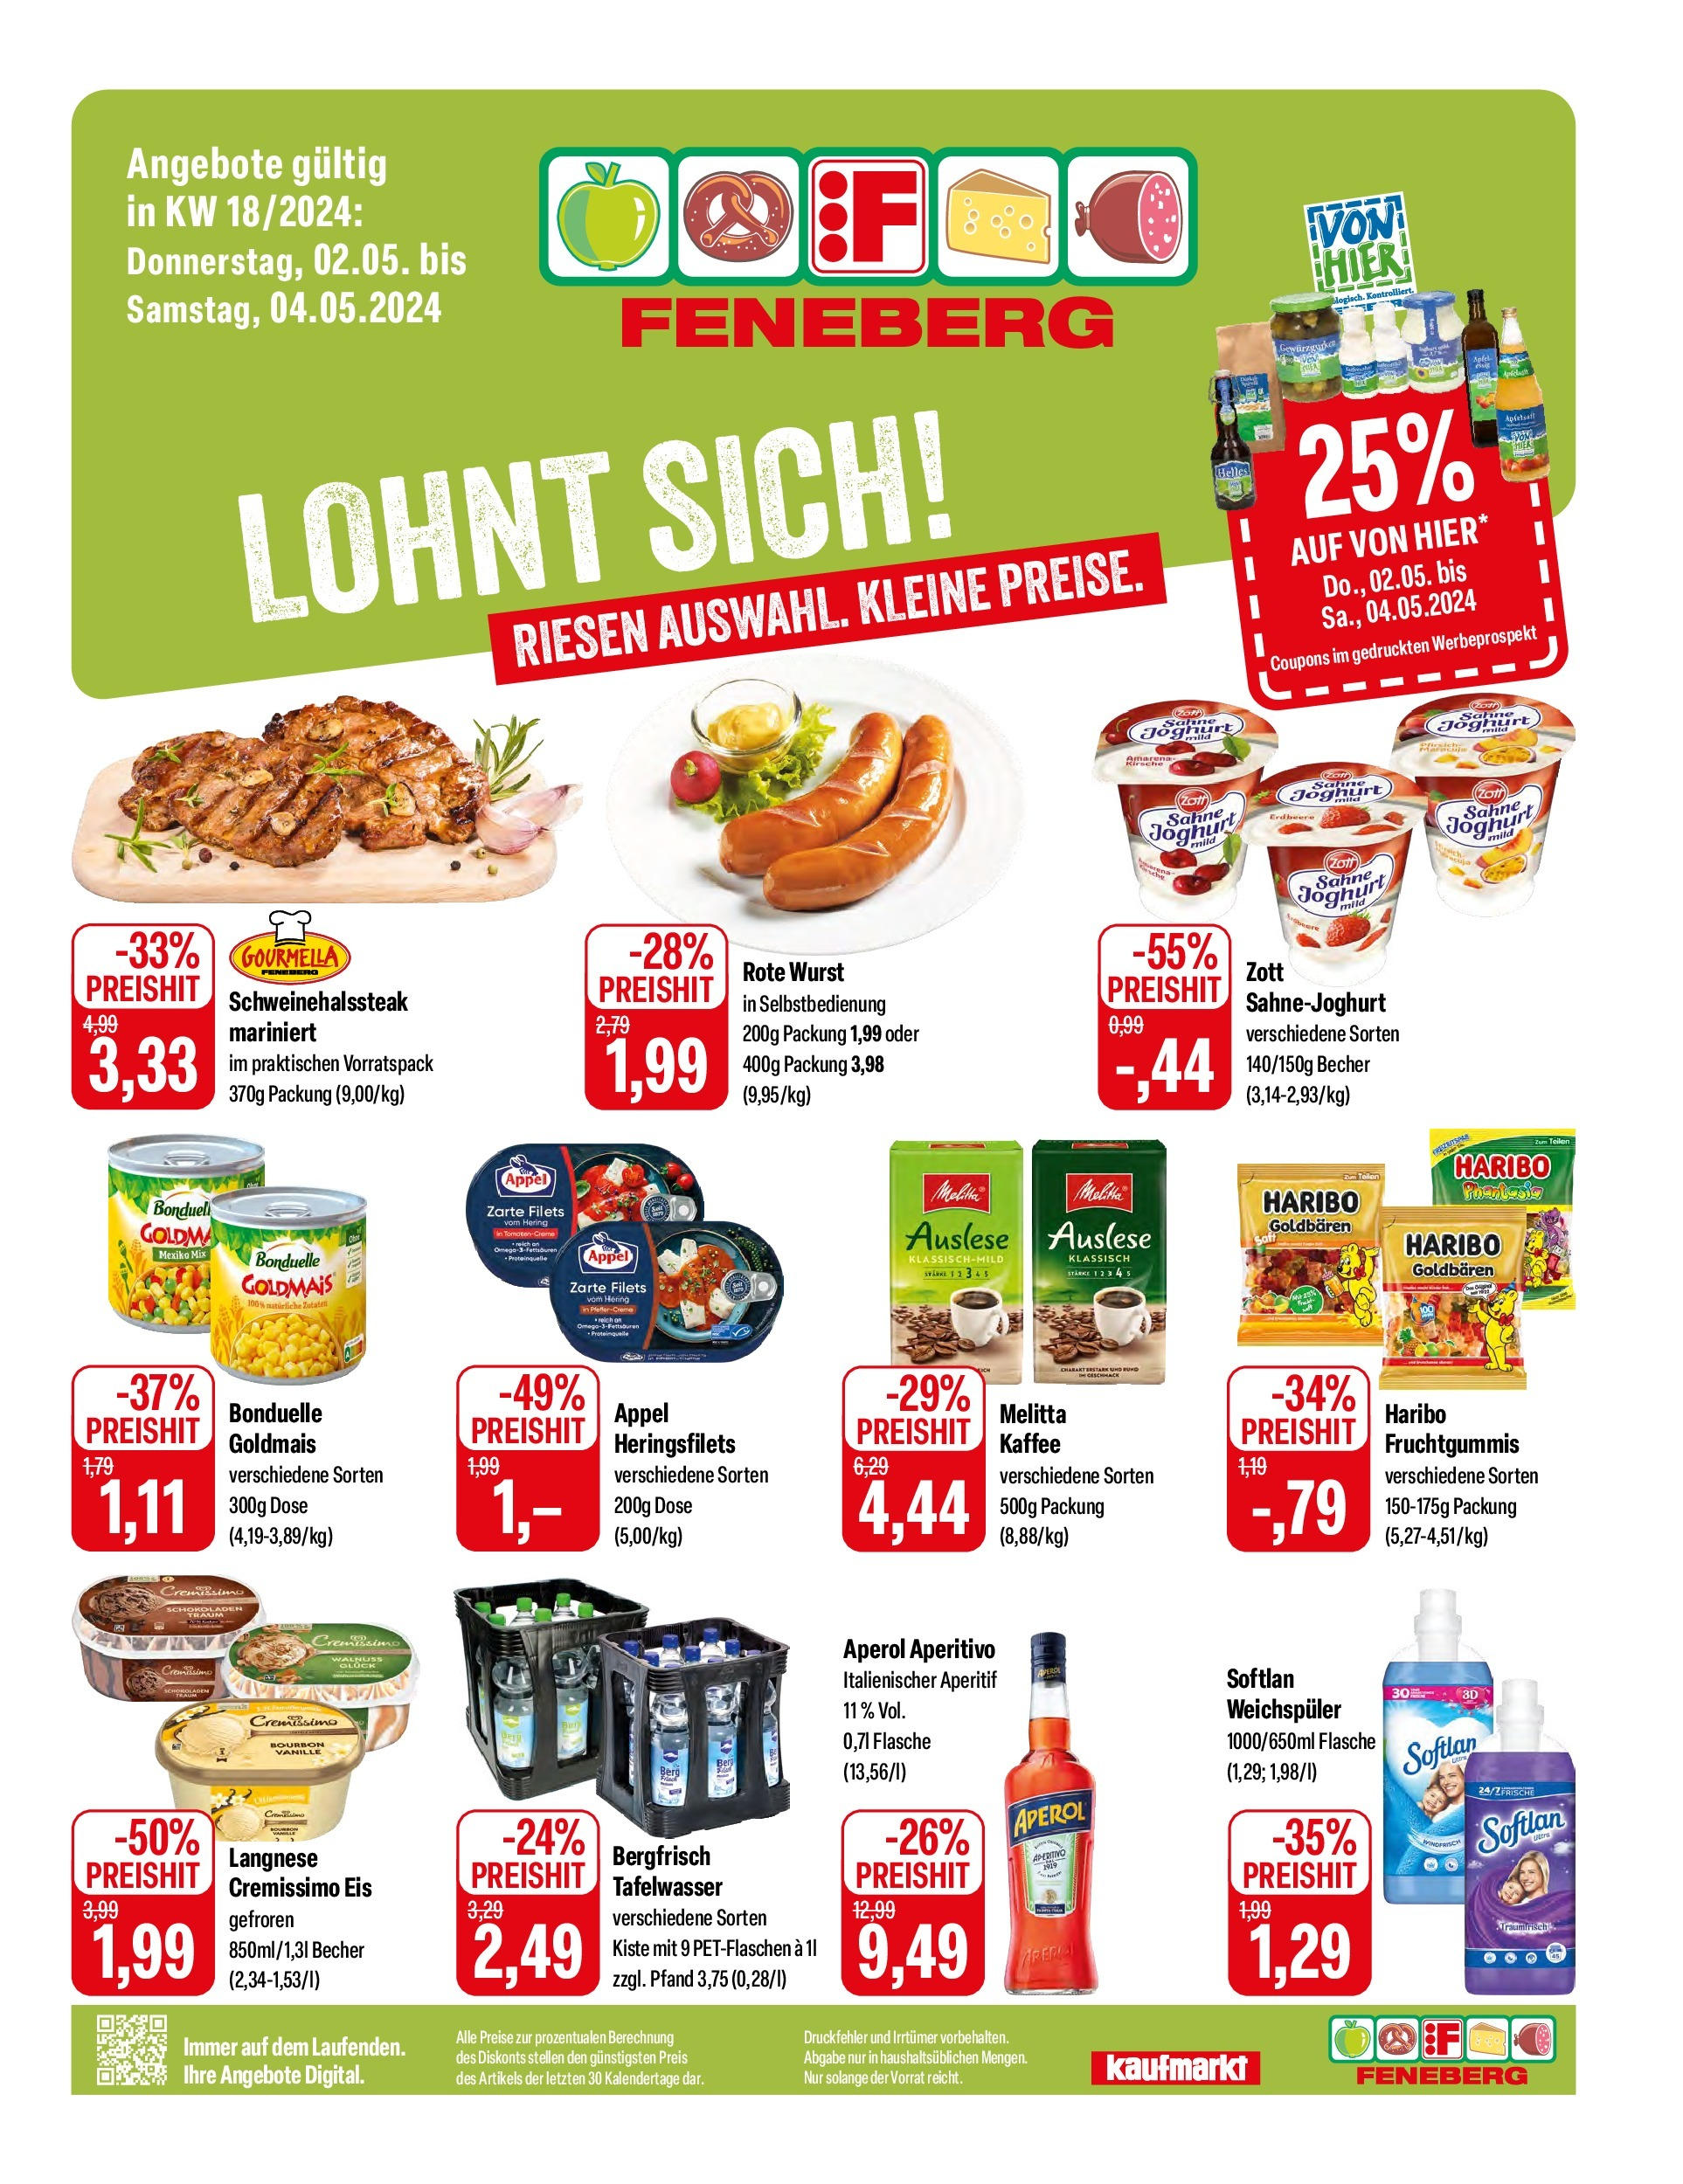 Feneberg Angebote (ab 02.05.2024) zum Blättern | Seite: 1 | Produkte: Melitta, Kaffee, Sahne, Eis